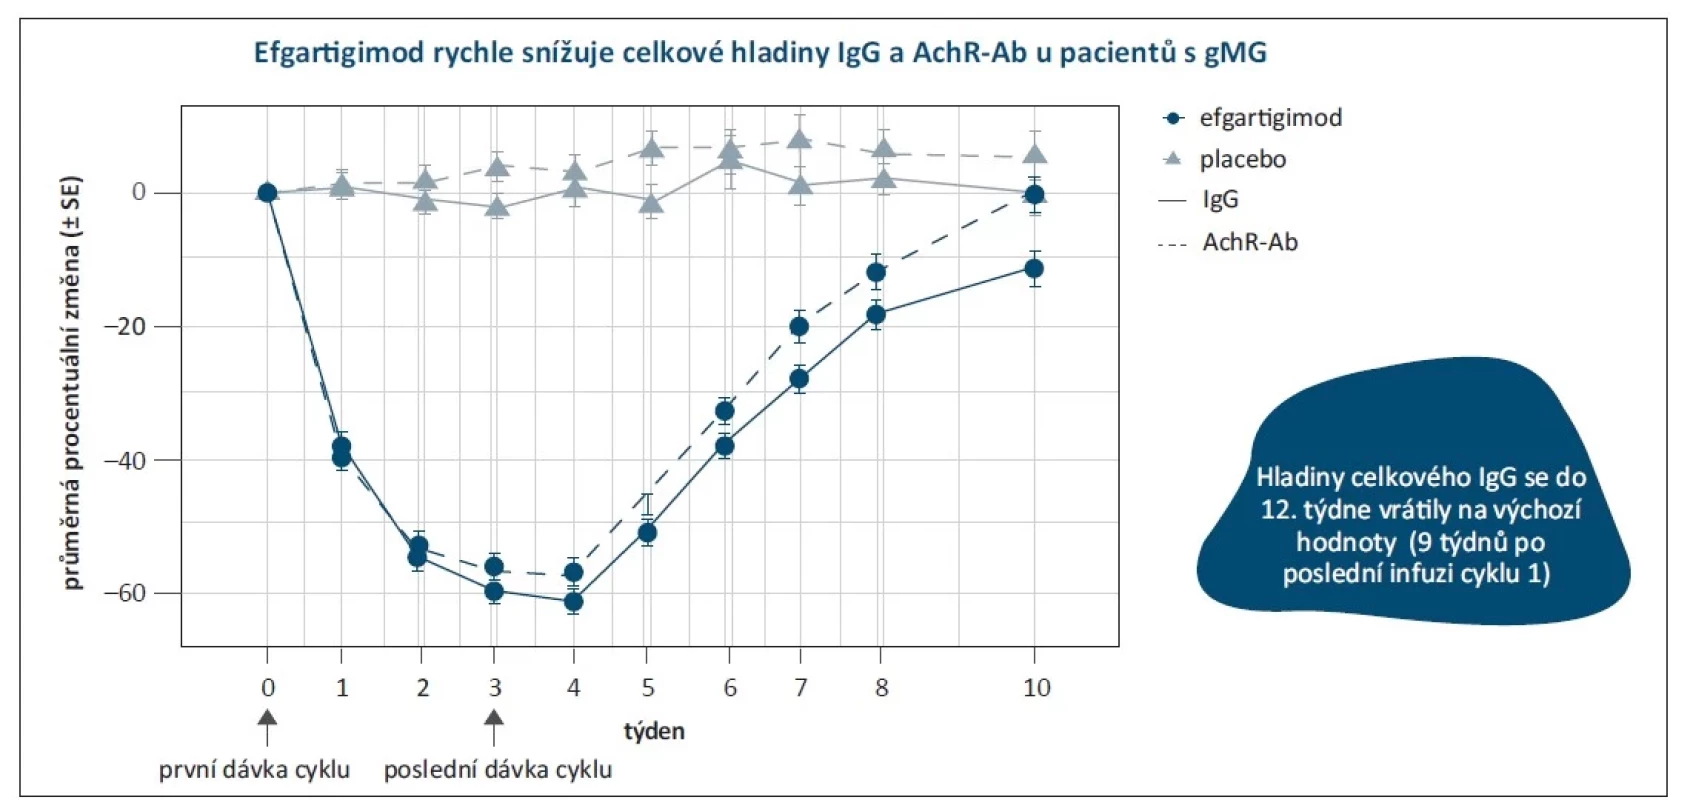 Snížení hladiny IgG a AchR-Ab u pacientů s myasthenií gravis. Upraveno podle [17].<br>
AchR-Ab – protilátky proti acetylcholinovým receptorům; gMG – generalizovaná myasthenia gravis; Ig – imunoglobulin; SE – standardní chyba<br>
Fig. 2. Decreased levels of IgG and AchR-Ab in patients with myasthenia gravis. Modified by [17].<br>
AchR-Ab – acetylcholine receptor antibody; gMG – generalized myasthenia gravis; Ig – immunoglobulin; SE – standard error